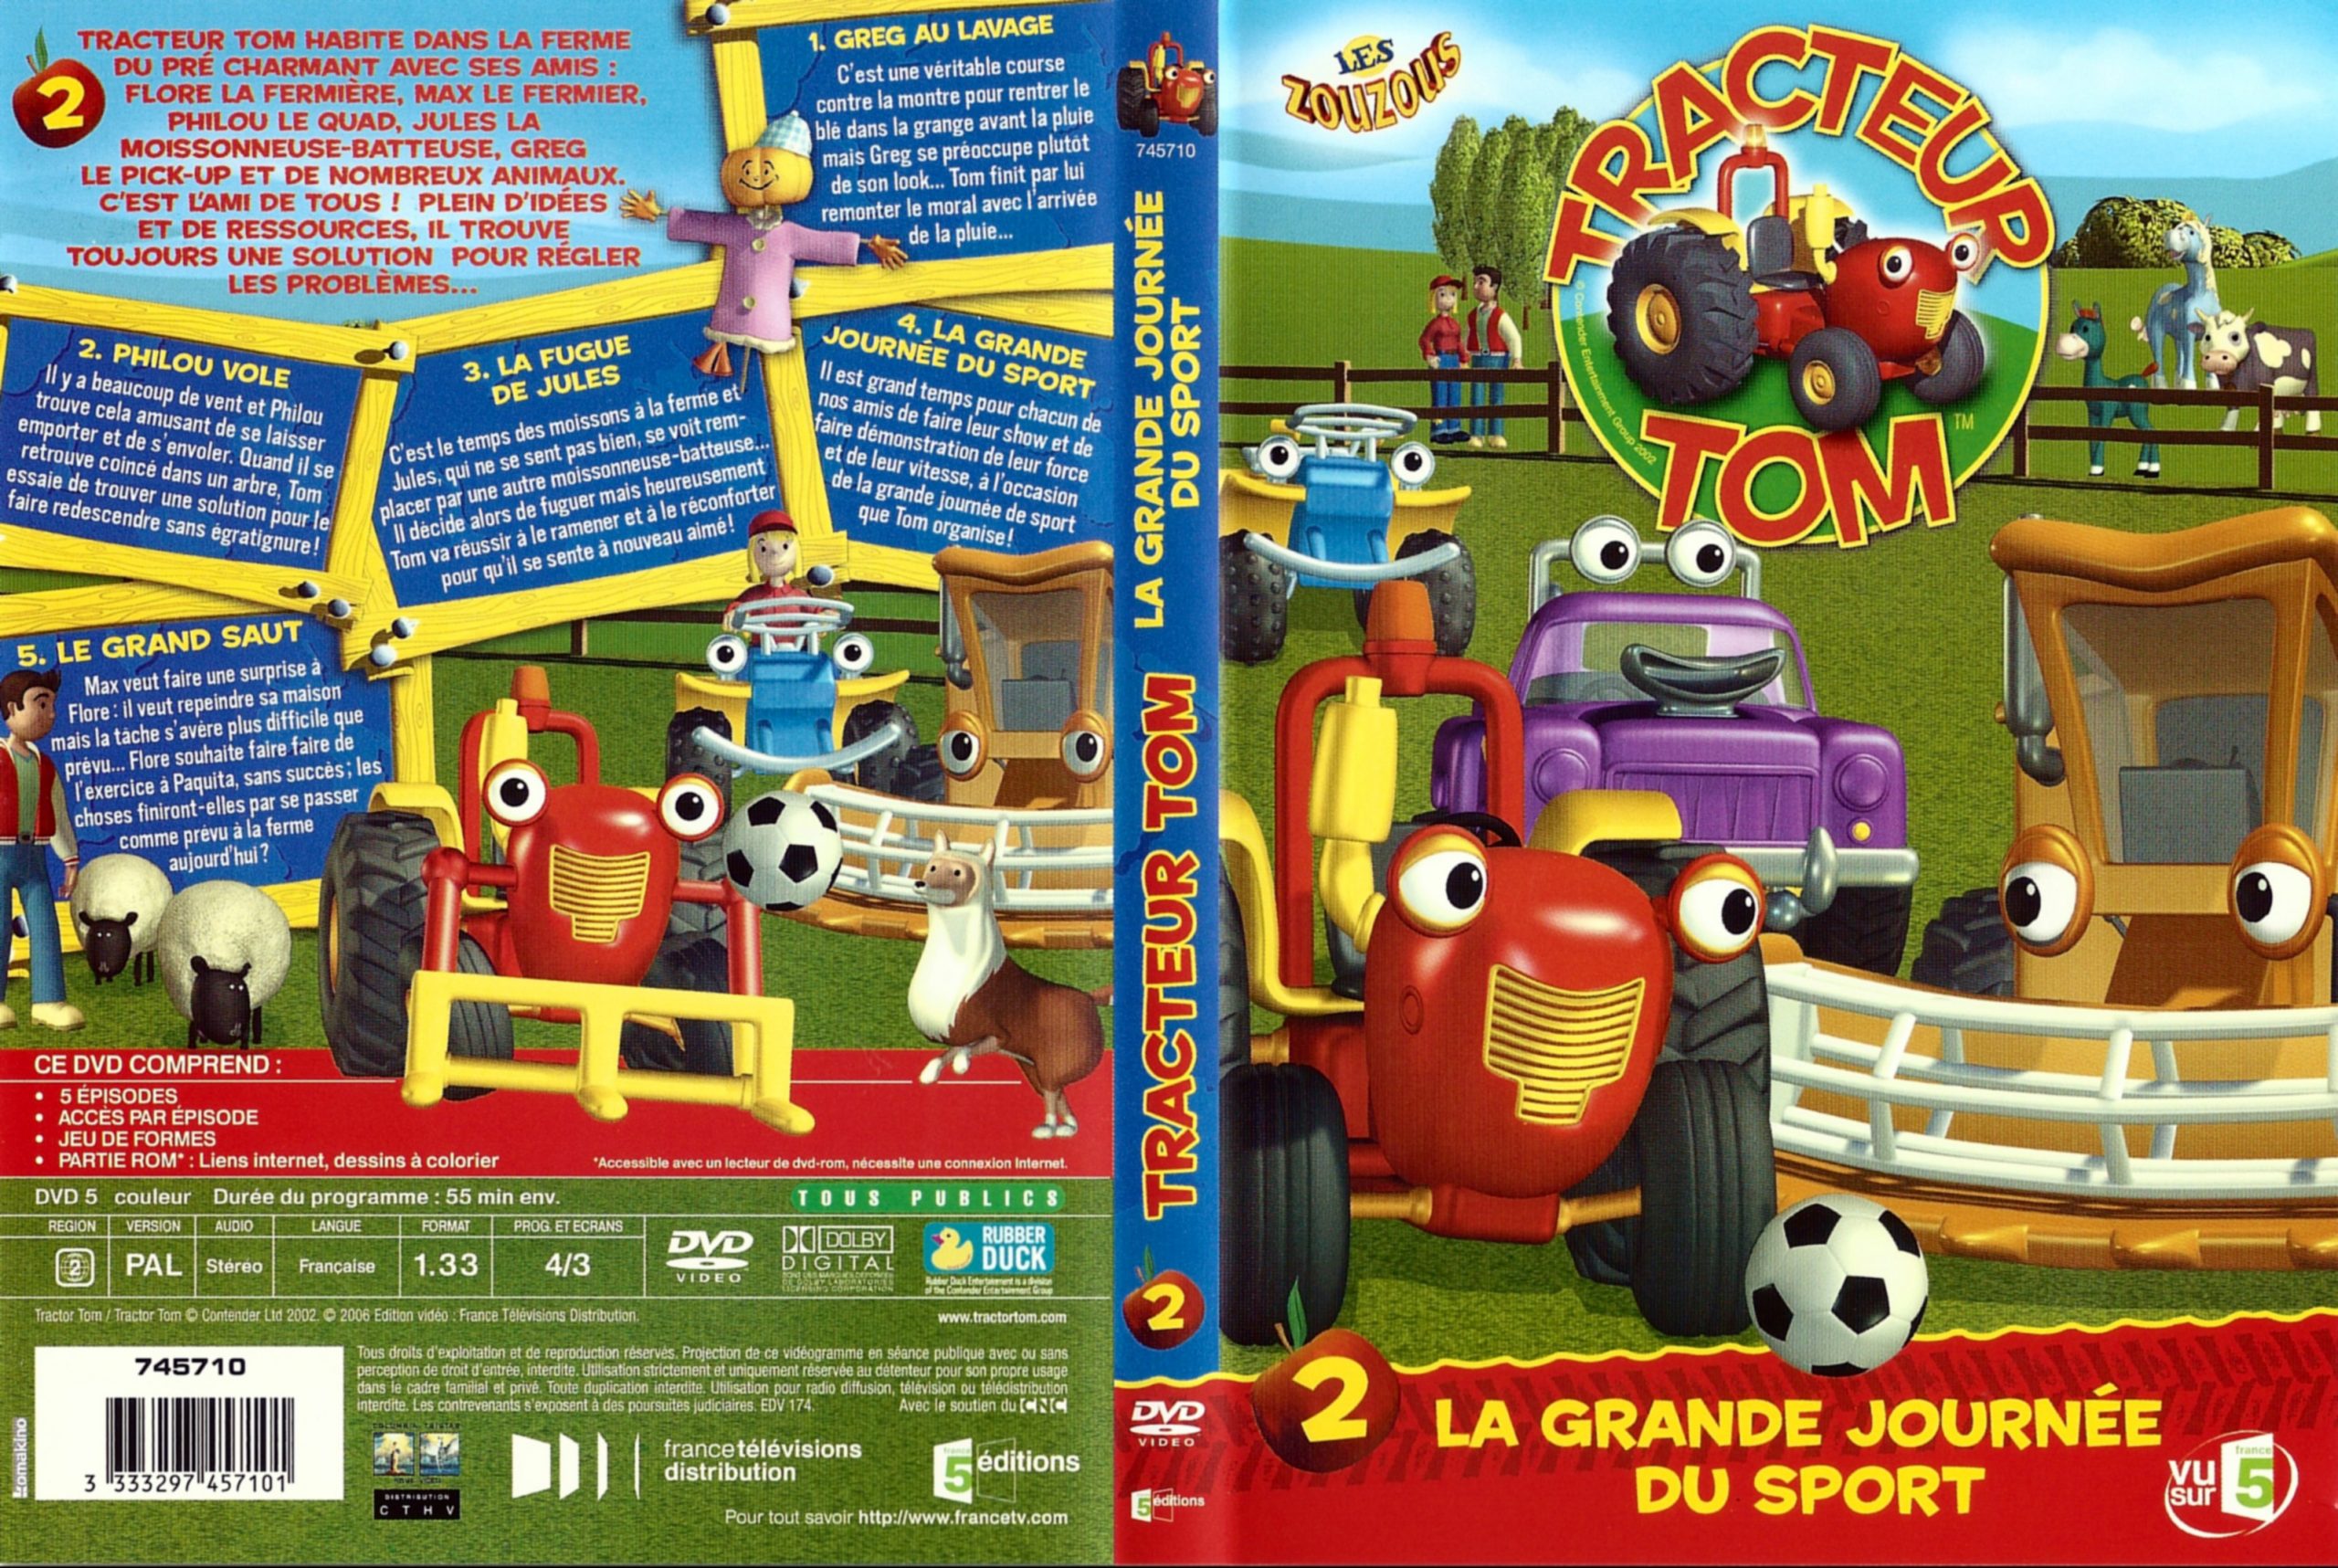 Jaquette Dvd De Tracteur Tom Saison 1 Vol 2 - Cinéma Passion serapportantà Tracteur Tom 